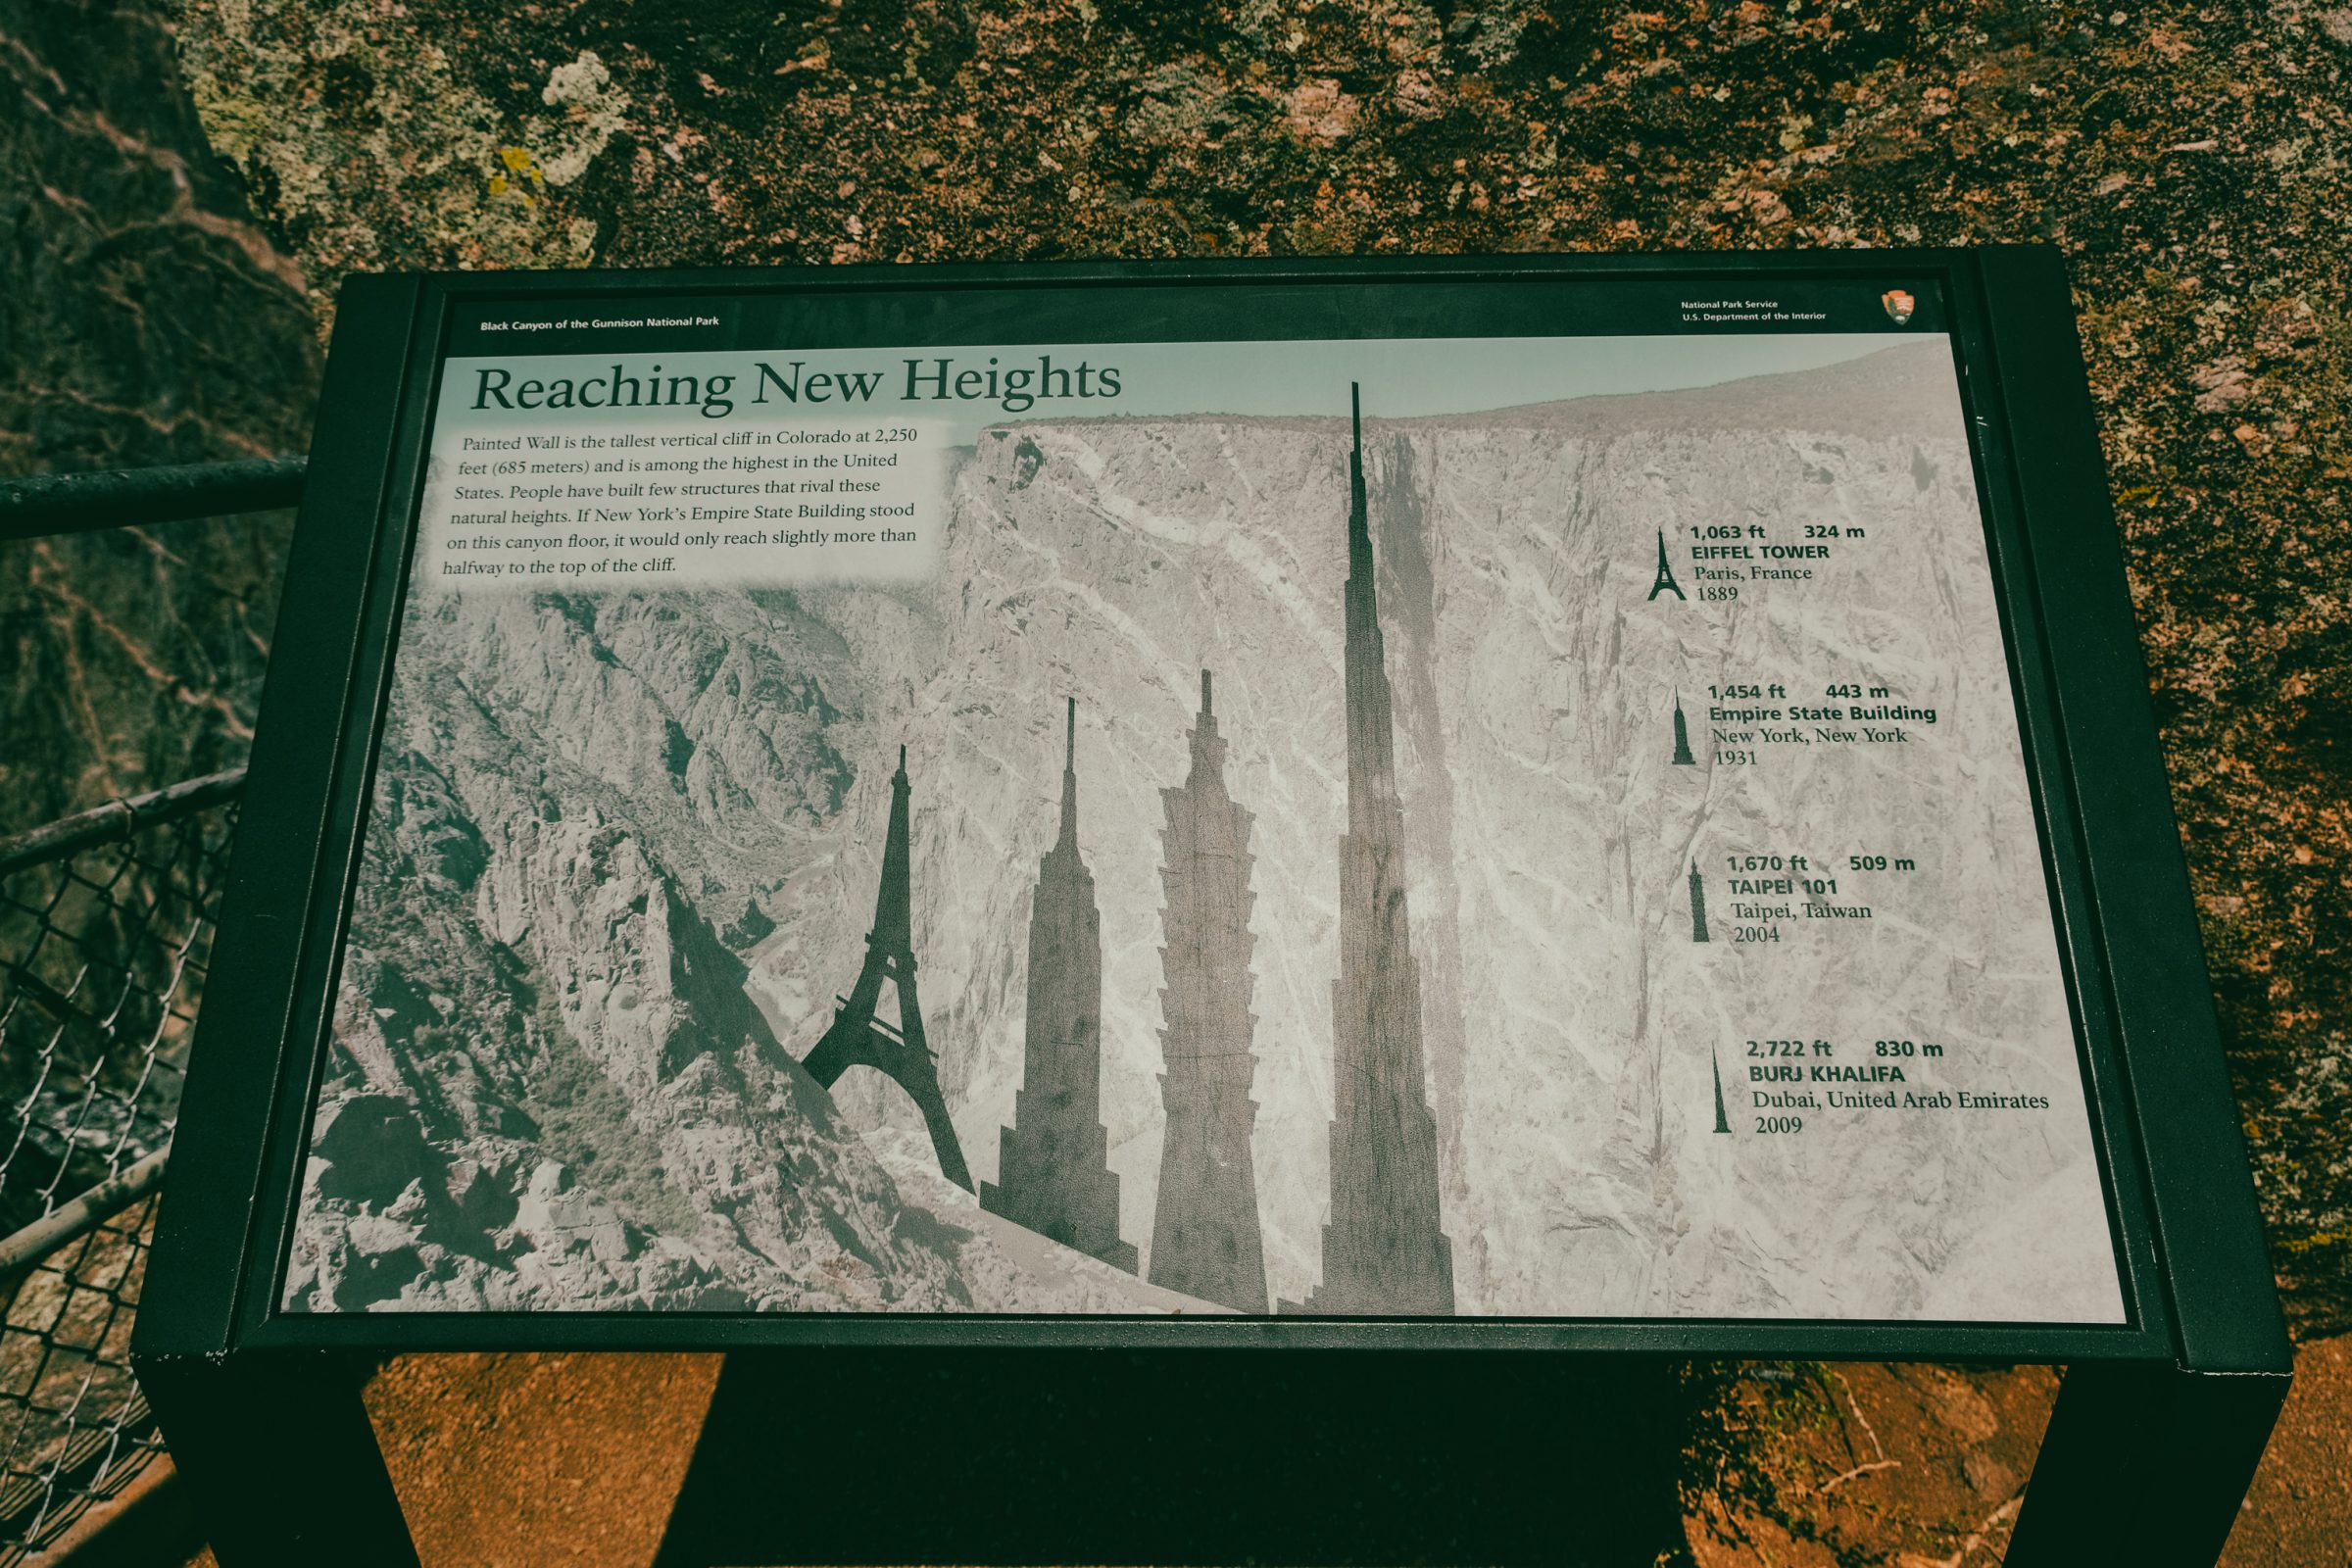 De diepte van de kloof van de Black Canyon vergeleken met beroemde hoge gebouwen